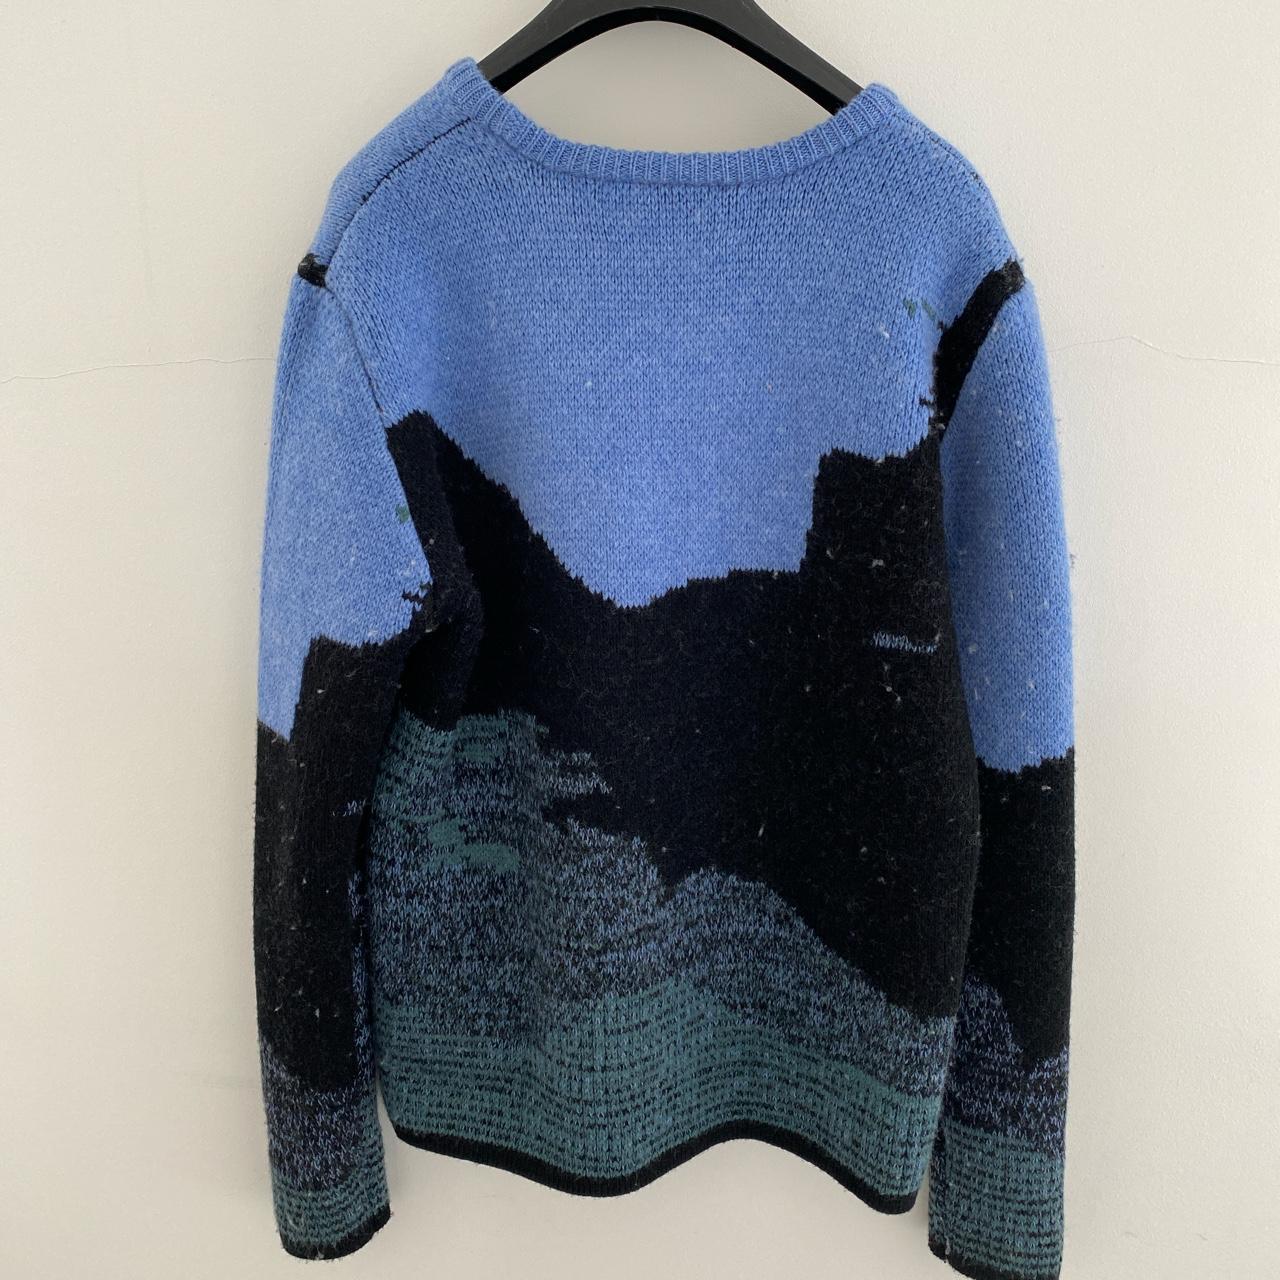 Super warm wool jumper, worn once original price... - Depop